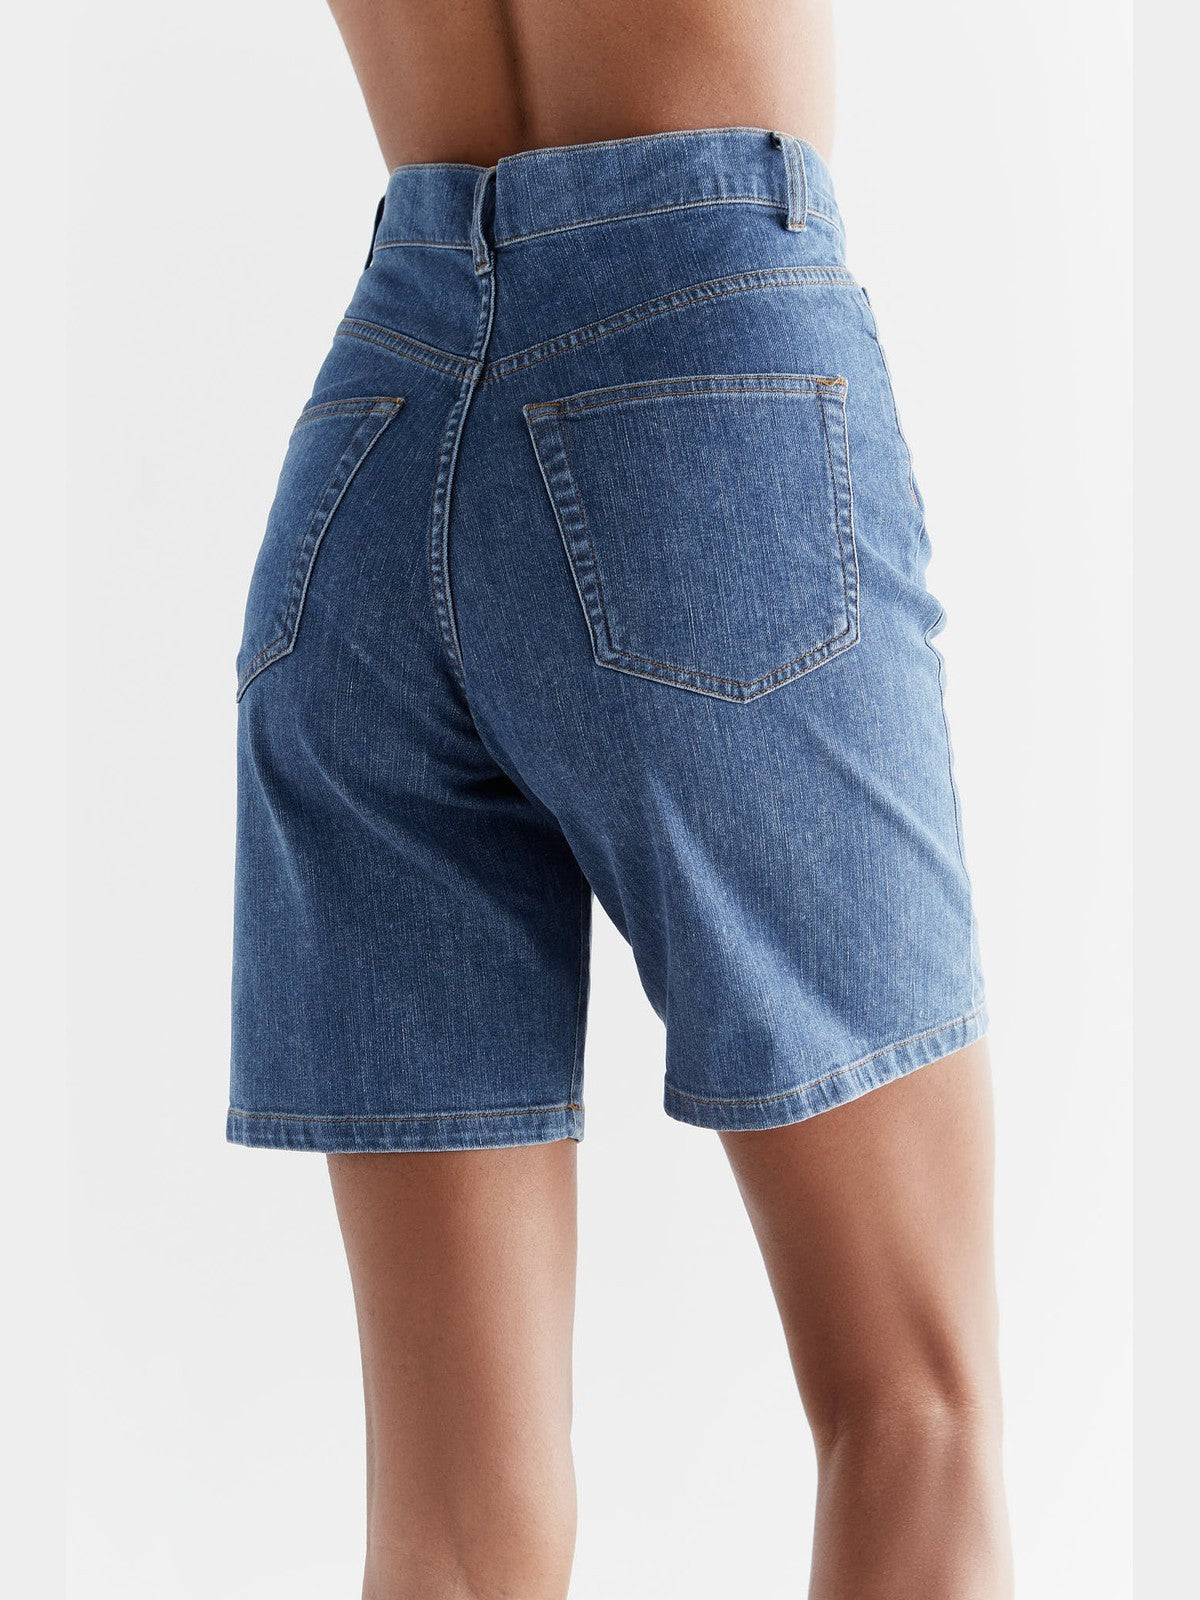 WA3020-283 | Women Denim Shorts - Ocean Blue